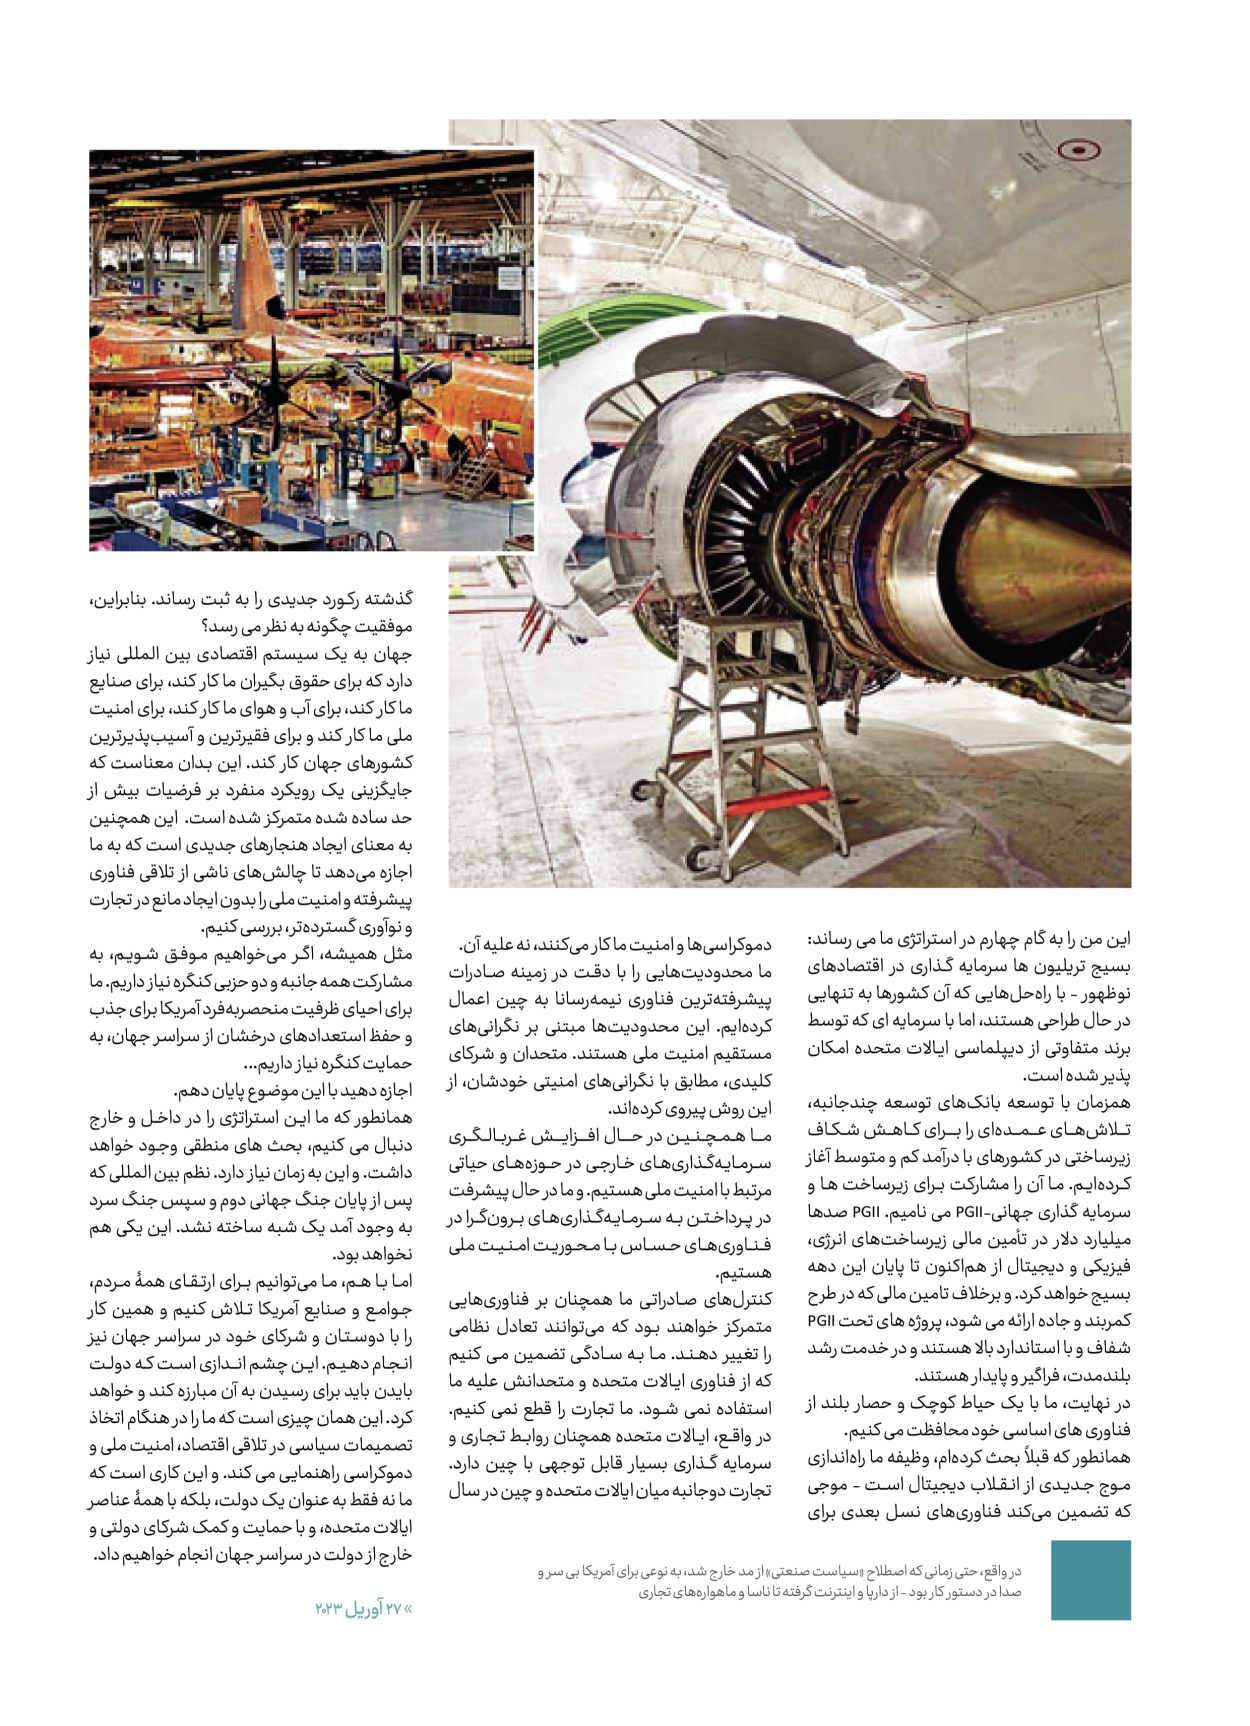 روزنامه ایران - ویژه نامه کرانه ۱ - ۲۶ اسفند ۱۴۰۲ - صفحه ۱۱۶